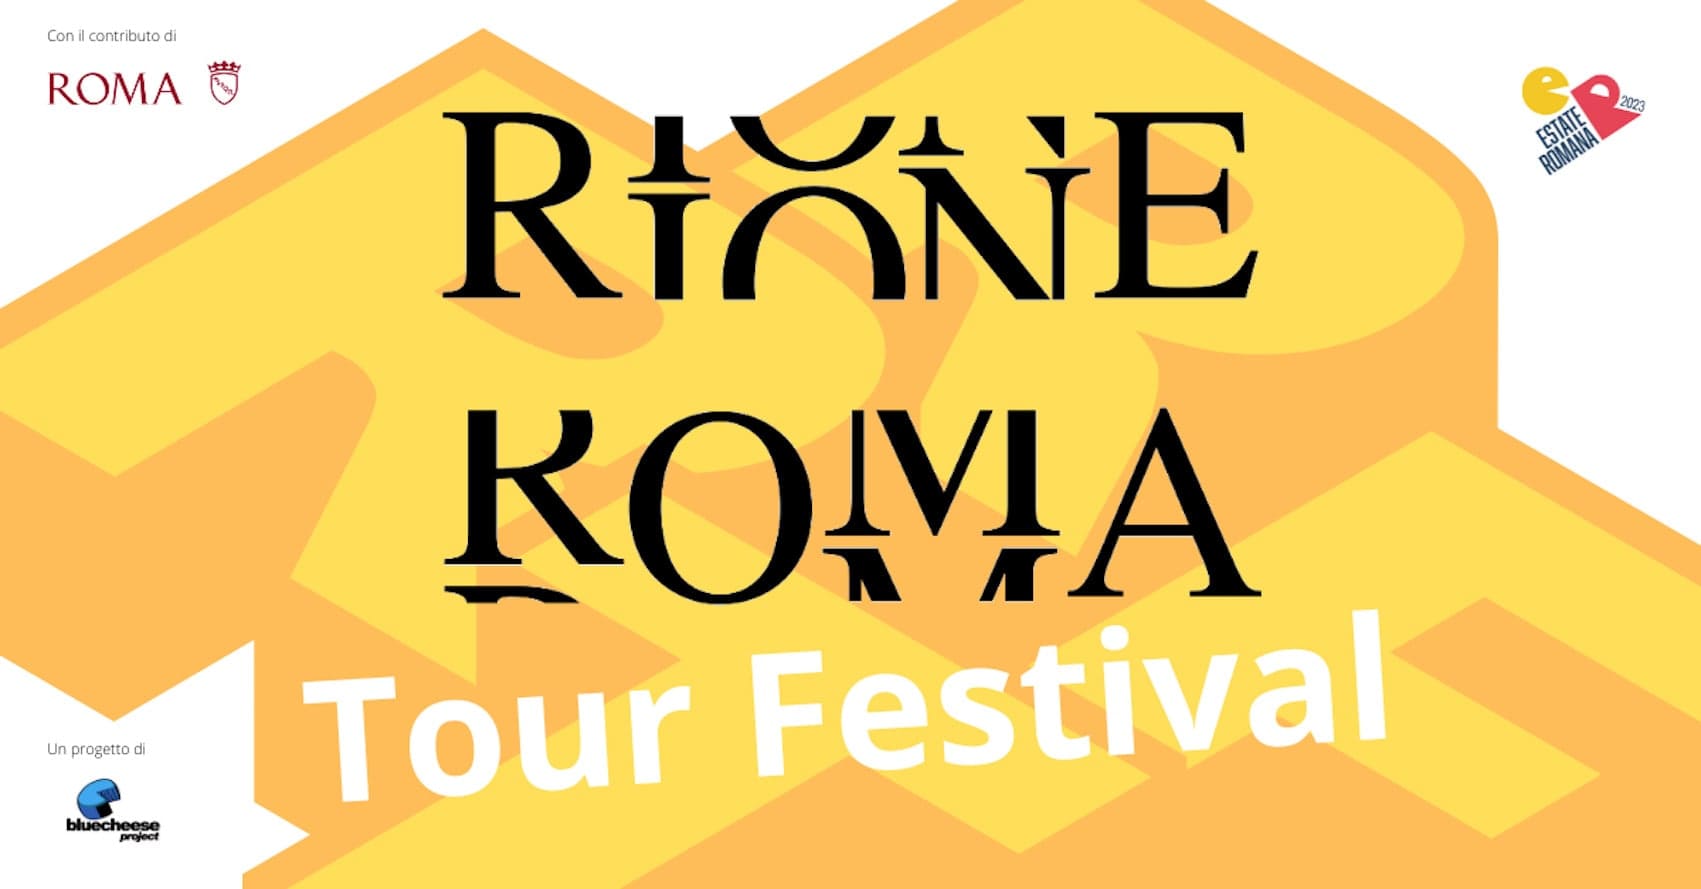 Rione-Roma-Tour-Festival-min